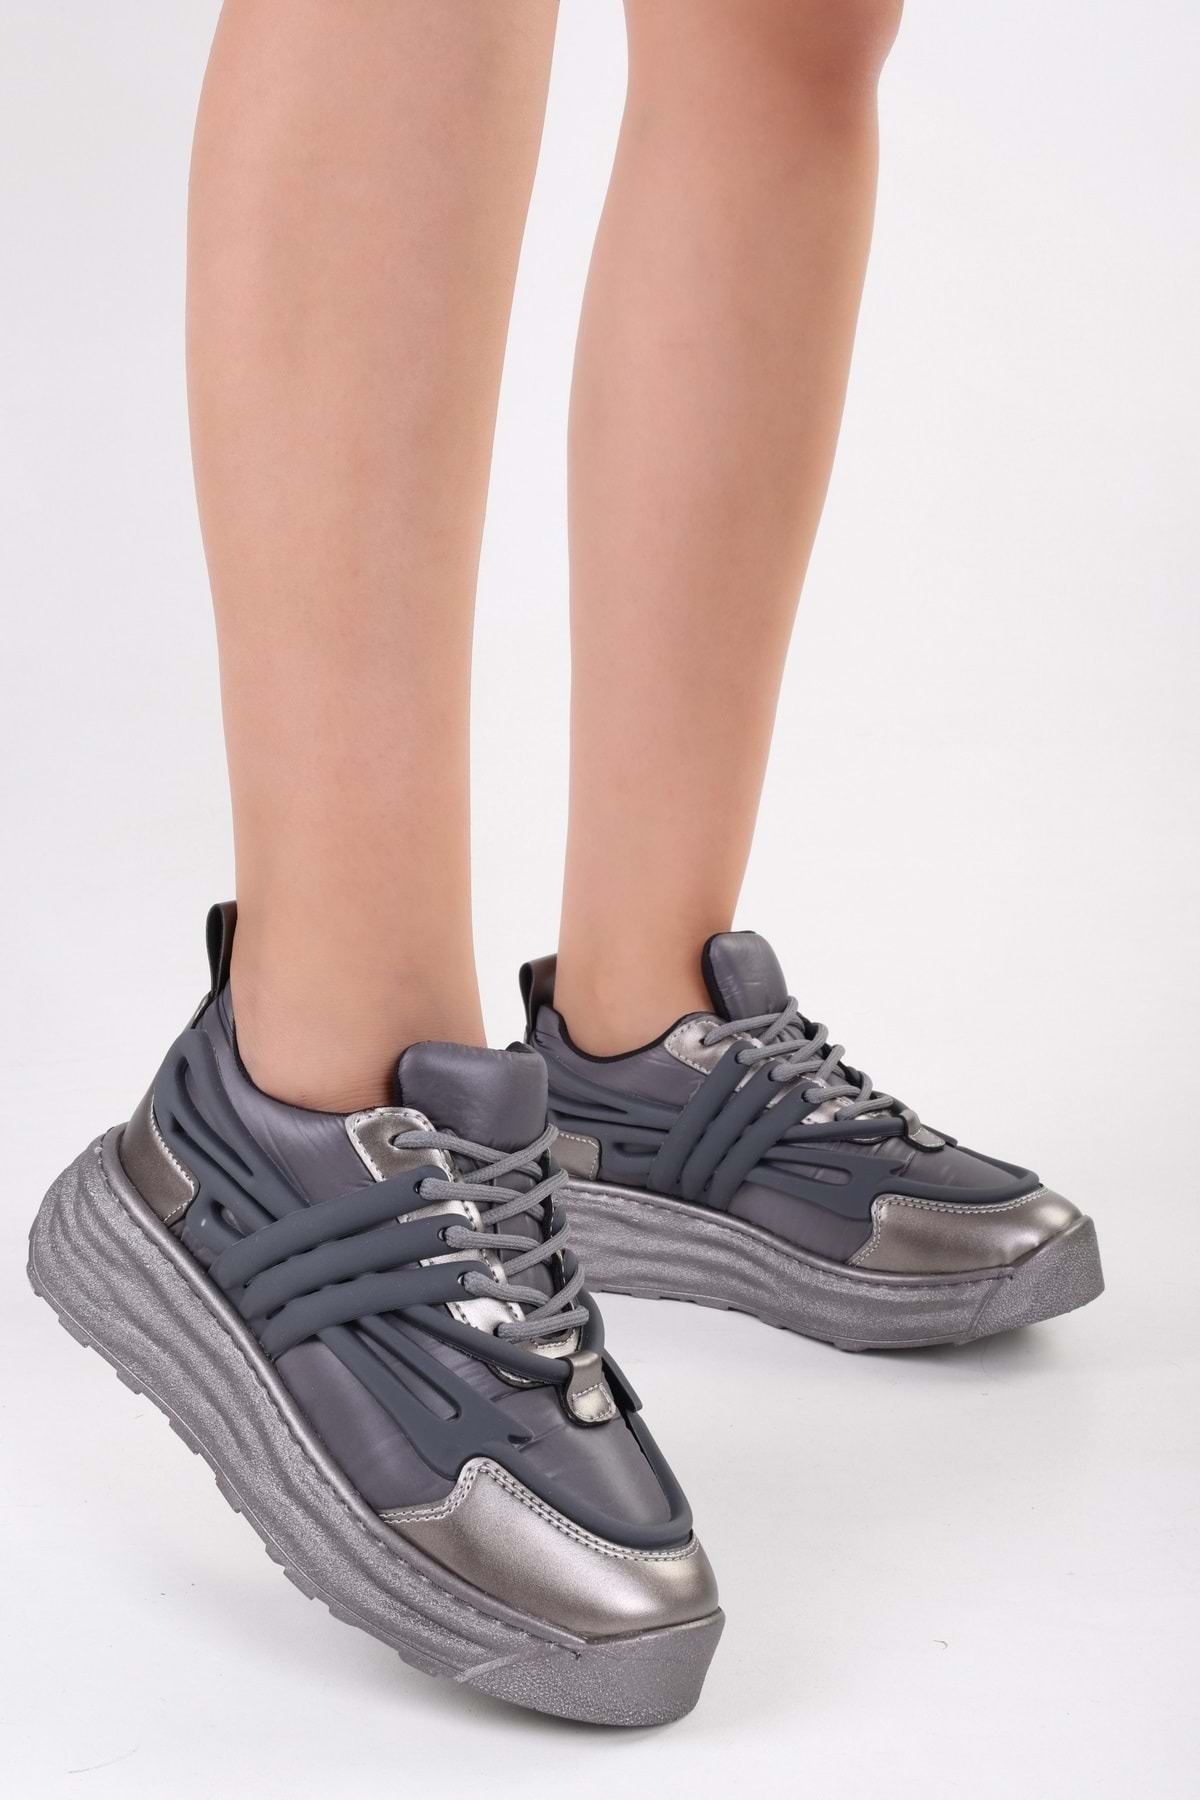 Levně Shoeberry Women's Langston Gray Parachute Casual Sneaker Shoes